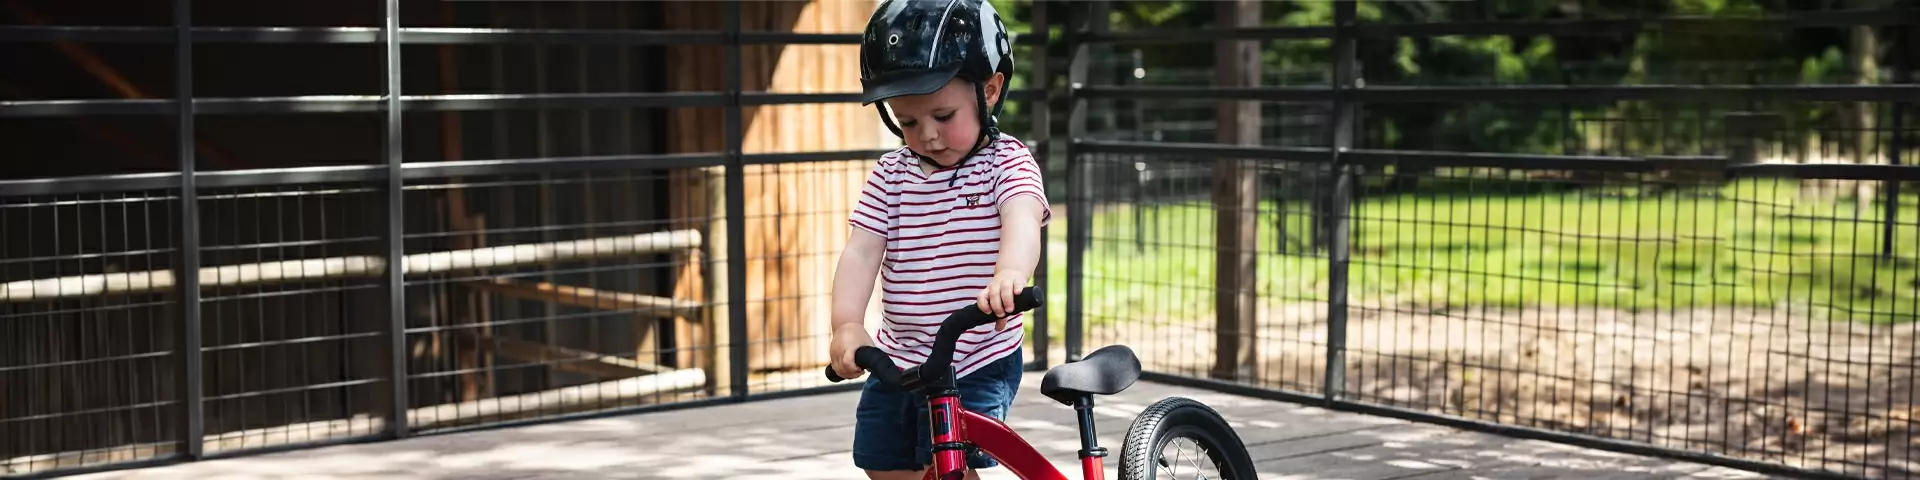 Accessori seggiolini bici bambino